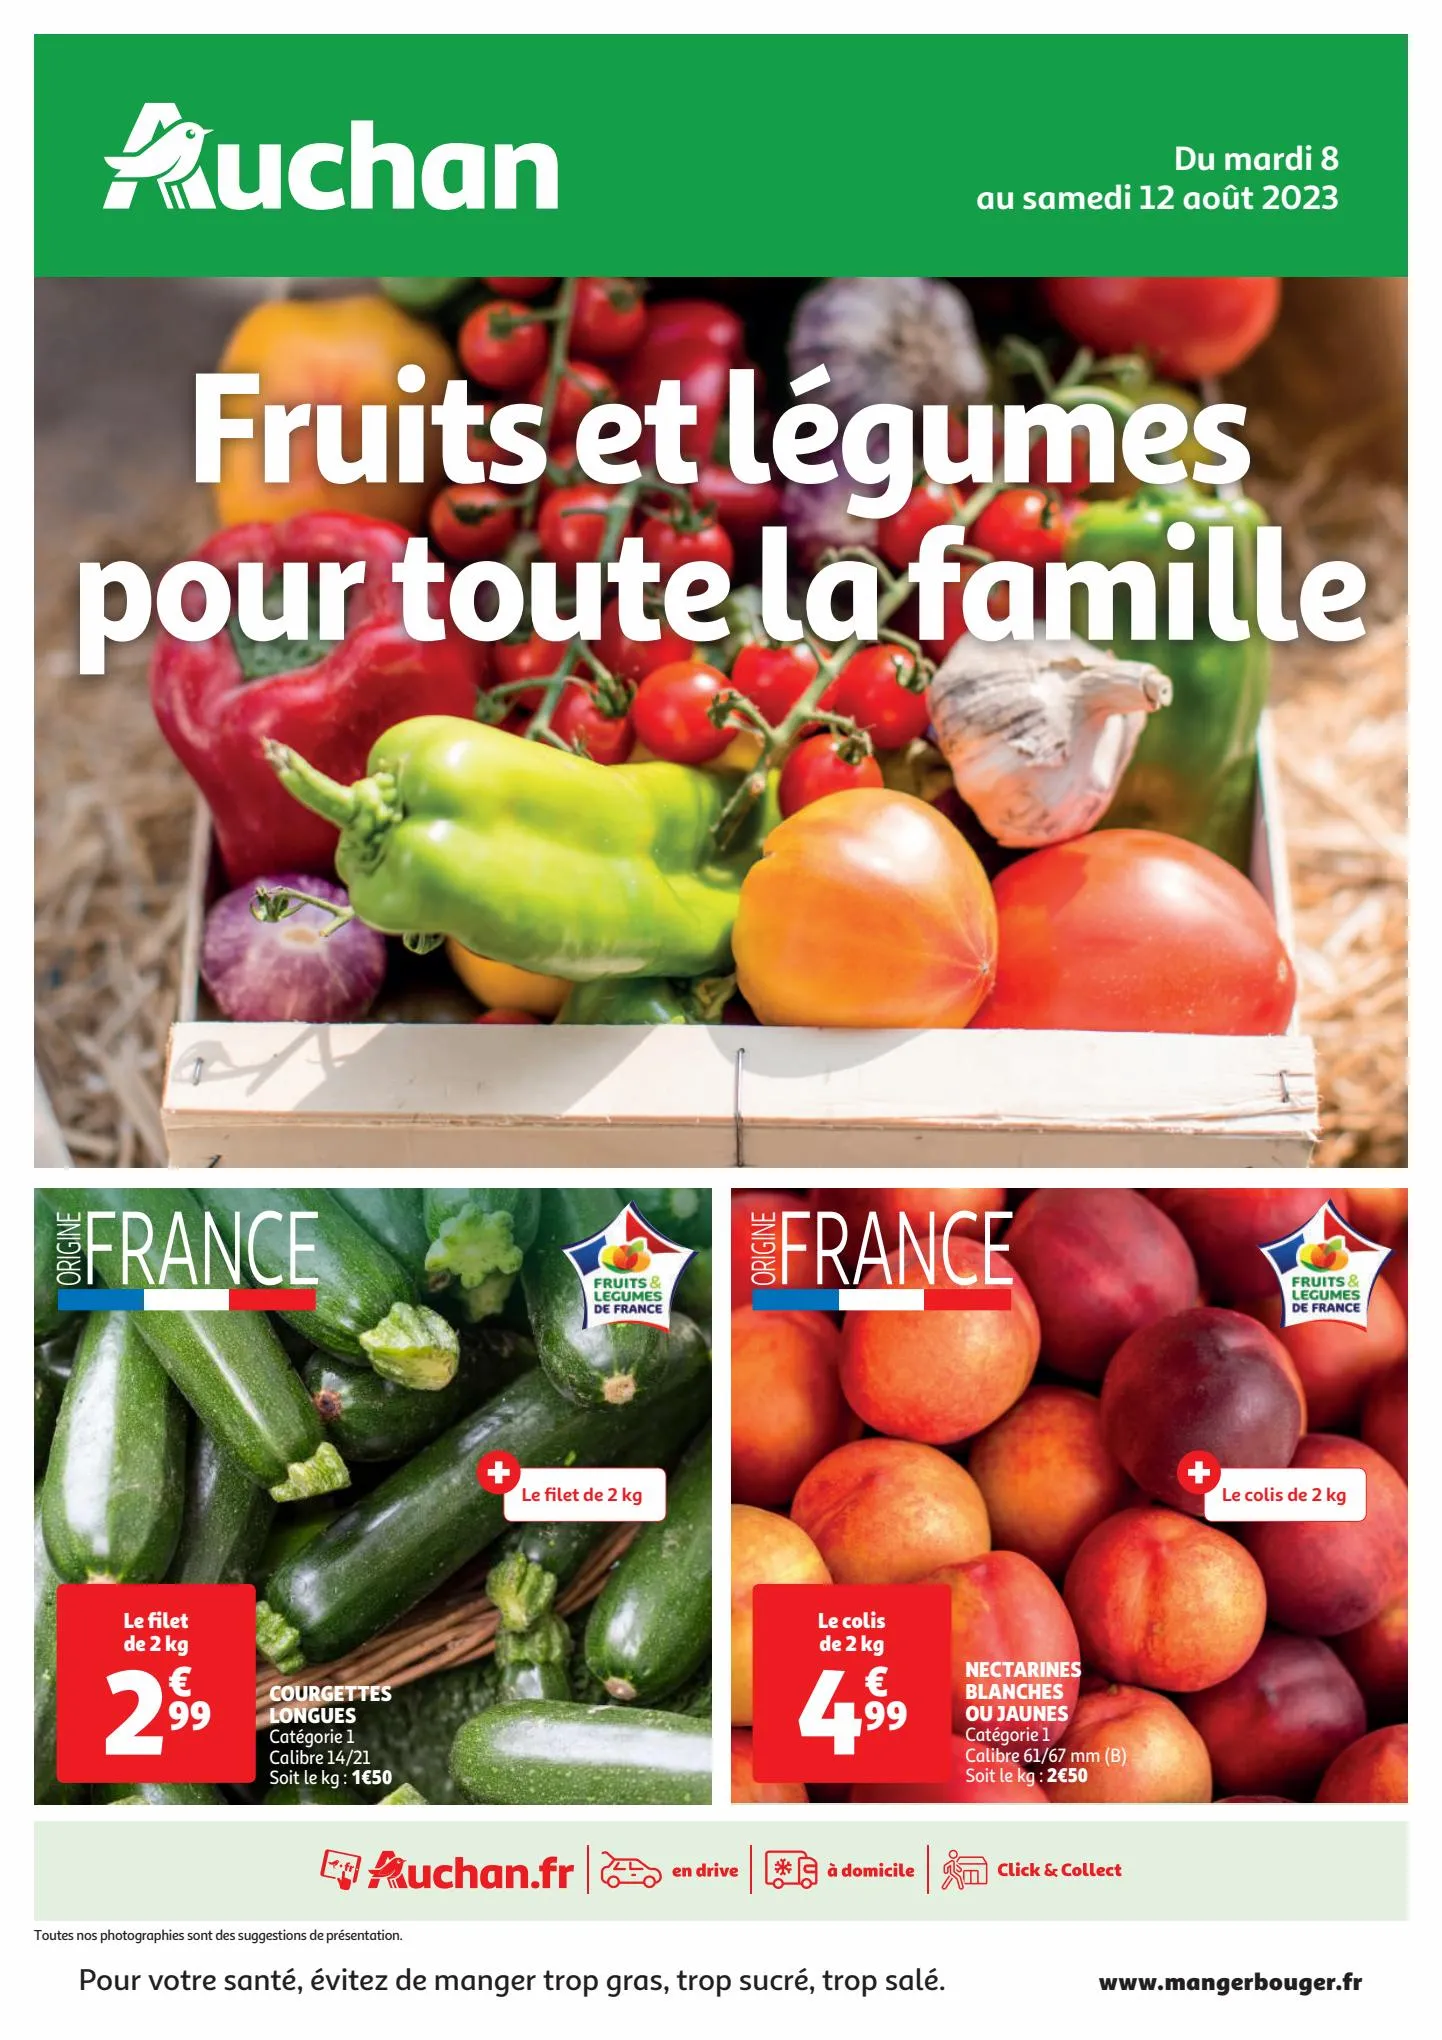 Catalogue Fruits et légumes pour toute la famille., page 00001